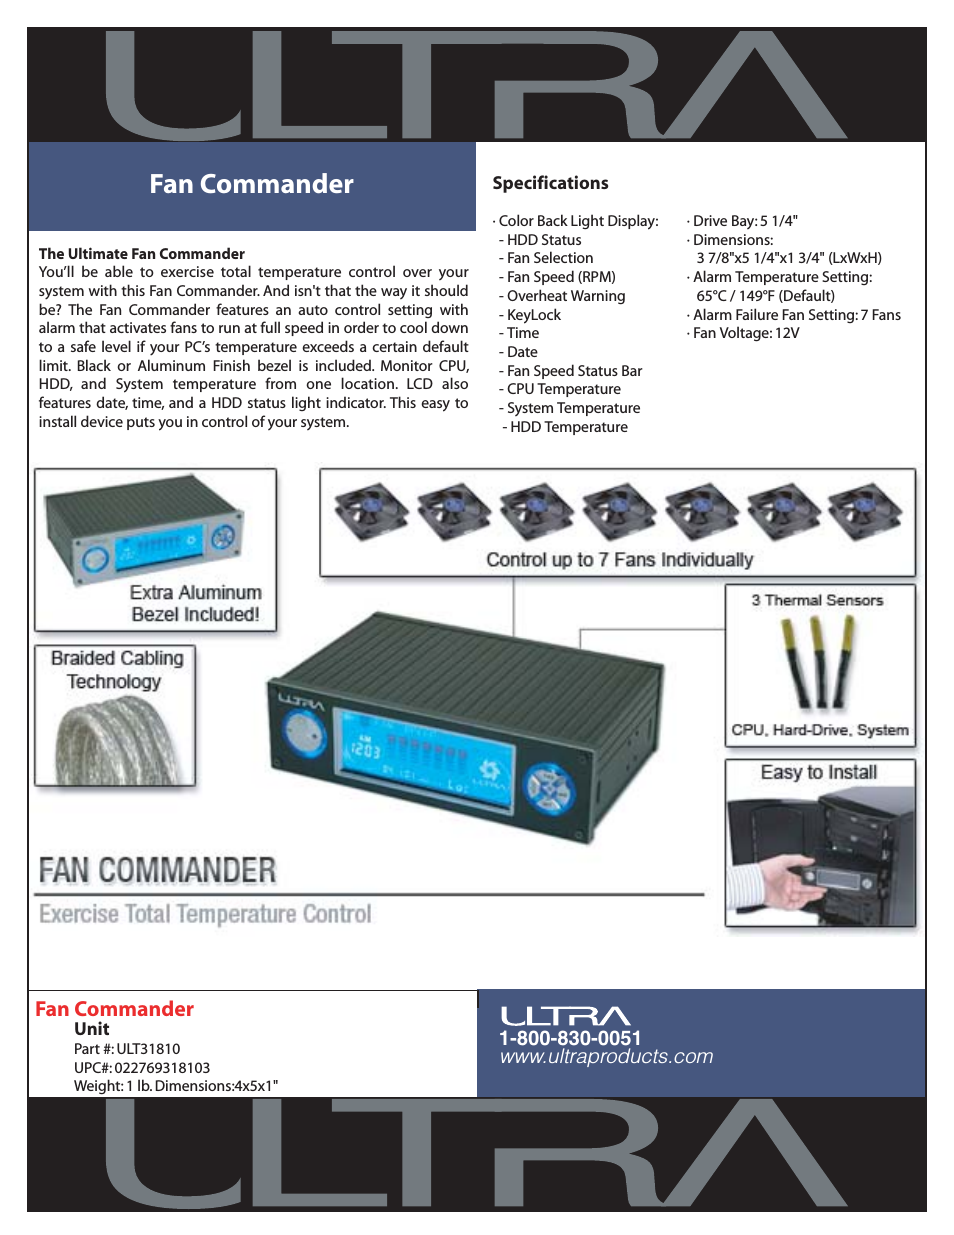 Fan Commander ULT31810